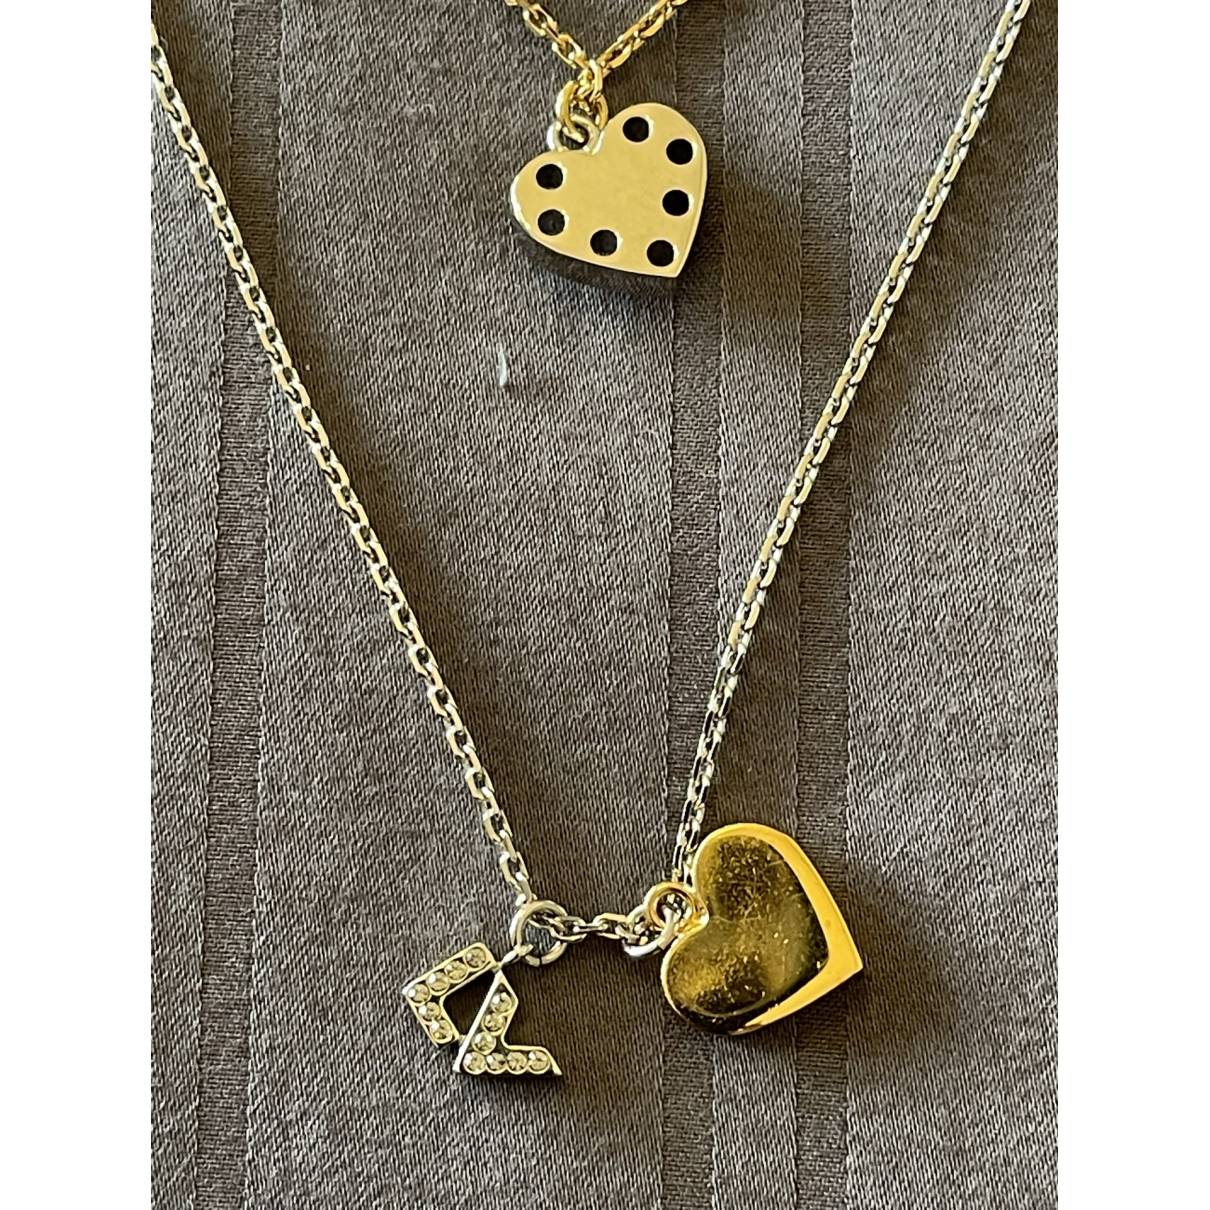 louis vuitton gold heart necklace